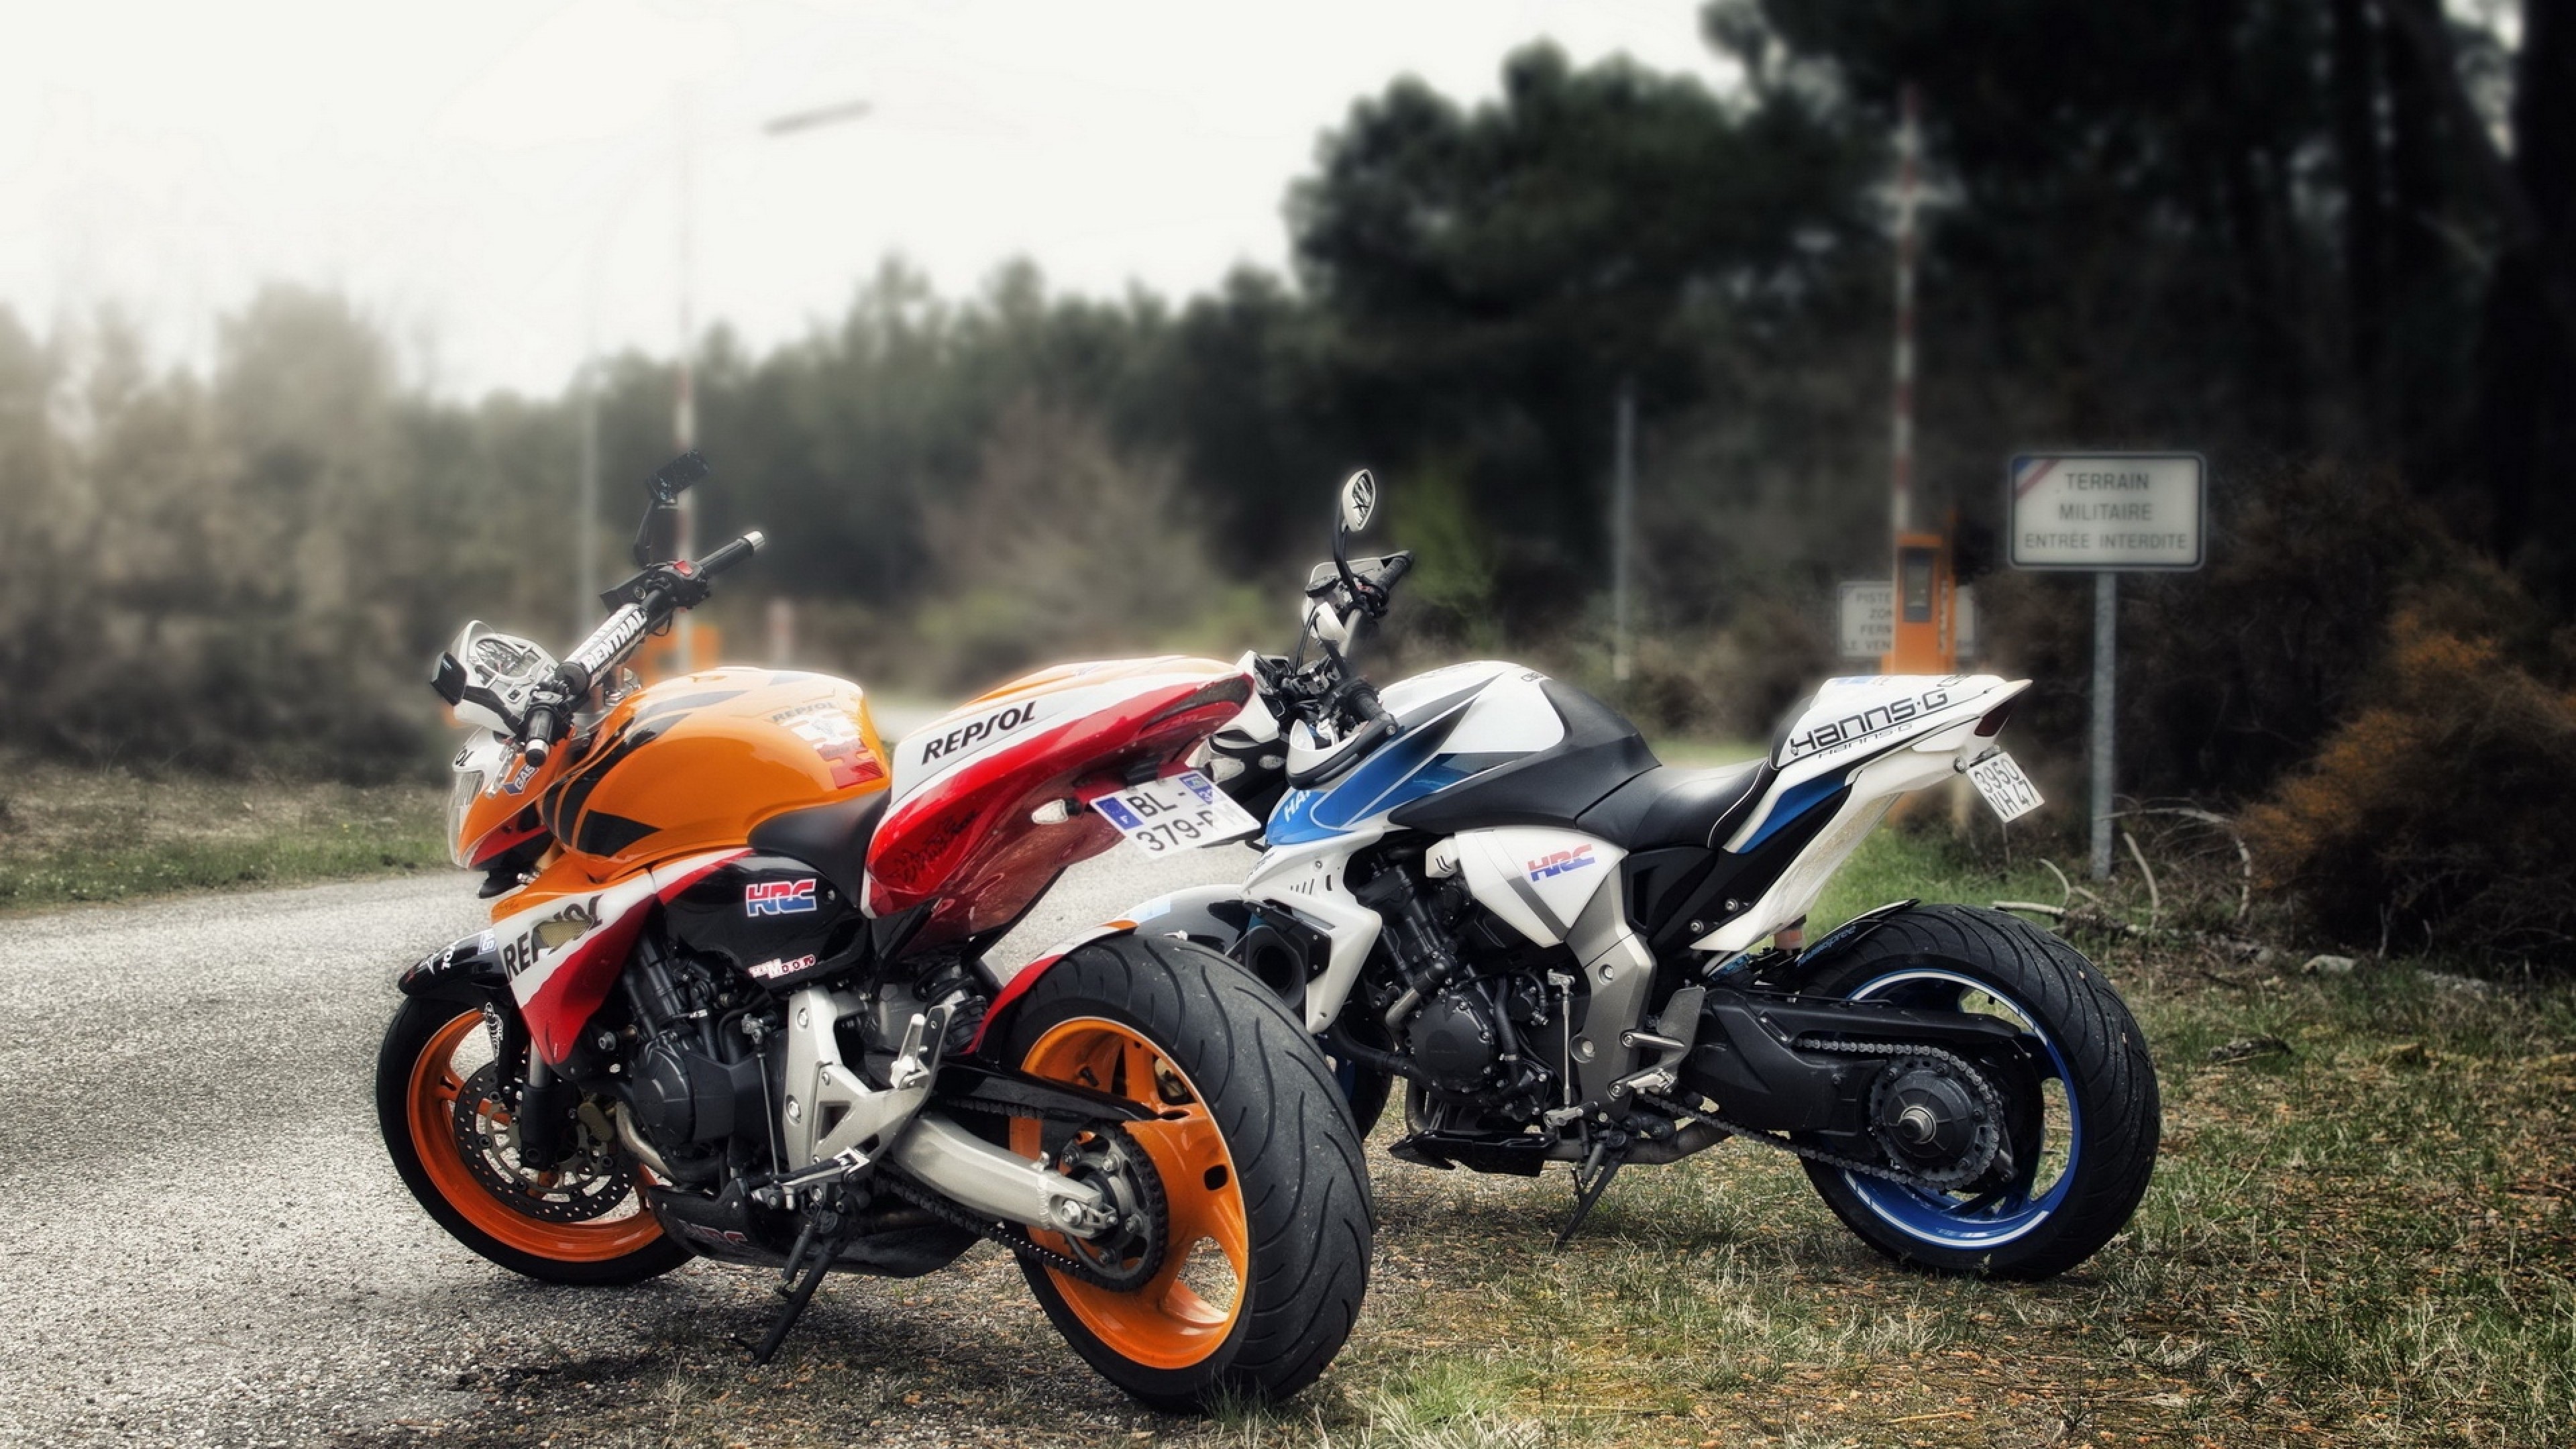 Обои на стол мотоциклы. Yamaha r1 оранжевый. Honda cb900f Hornet. Харнет спорт мотоцикол. Обои мото Хонда Хорнет.